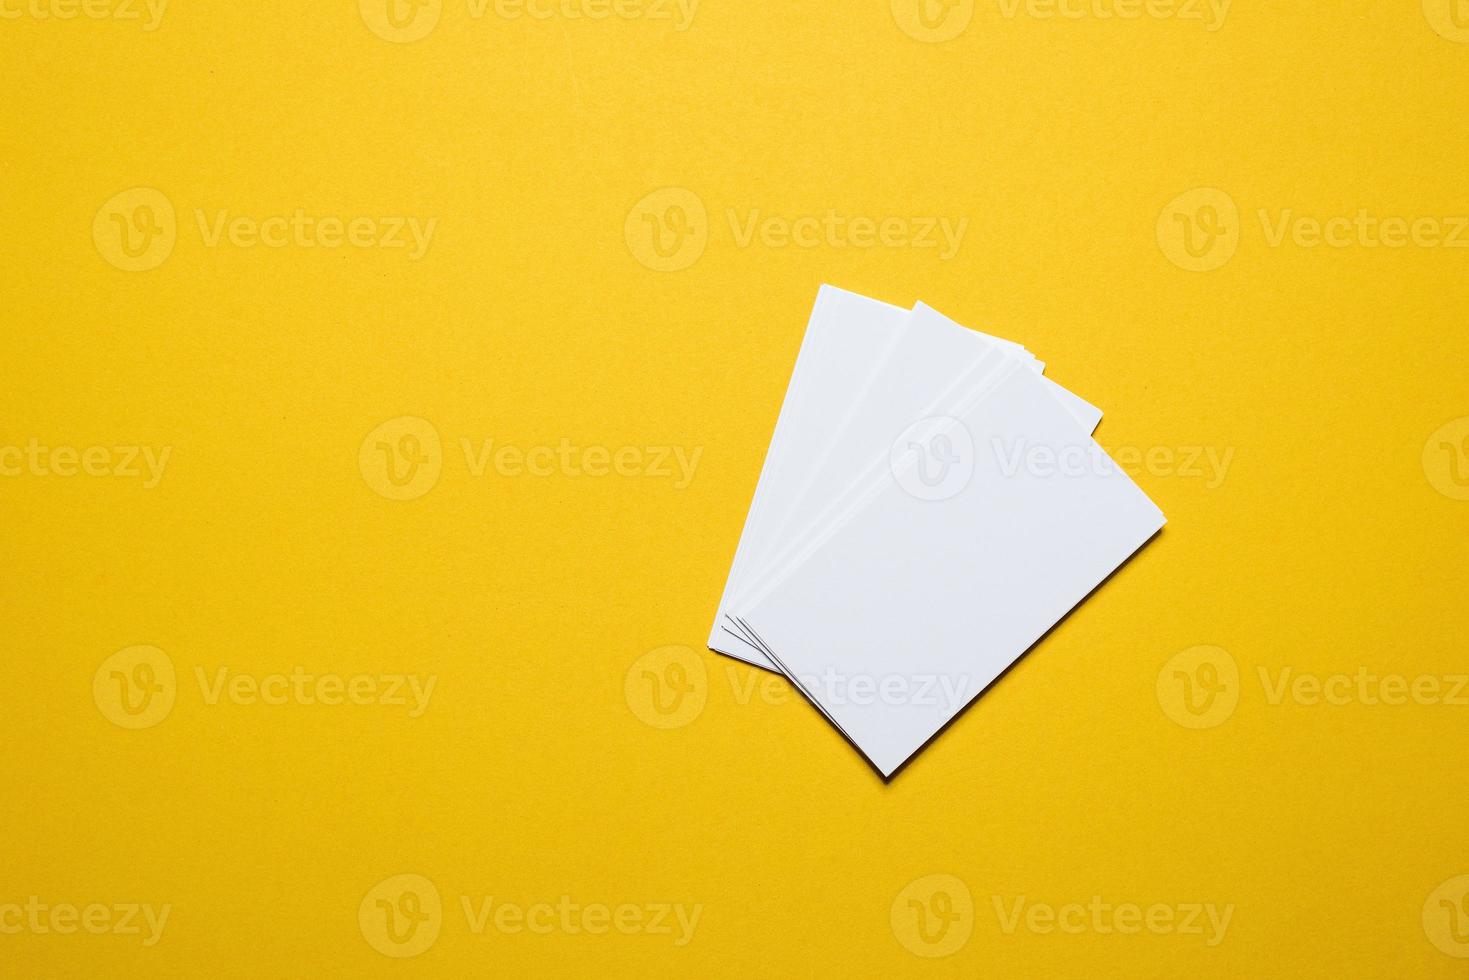 il biglietto da visita dell'uomo d'affari è posto su sfondo giallo. concetto di affari con lo spazio della copia foto